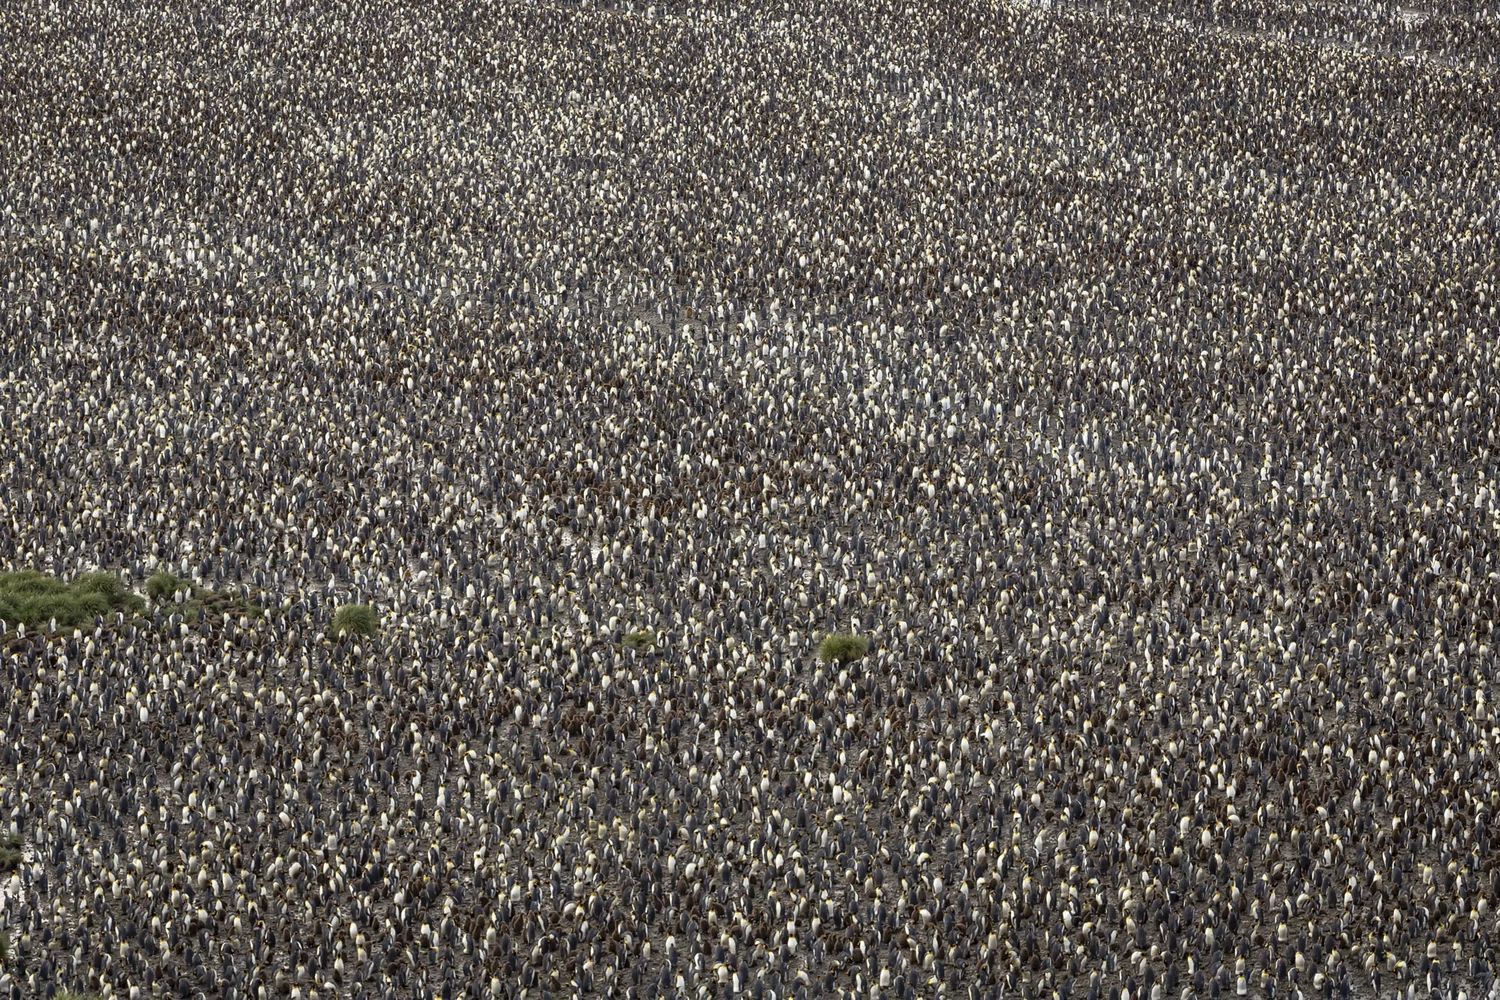 Огромная колония королевских пингвинов на острове Южная Георгия / ©PrinceImages / Getty